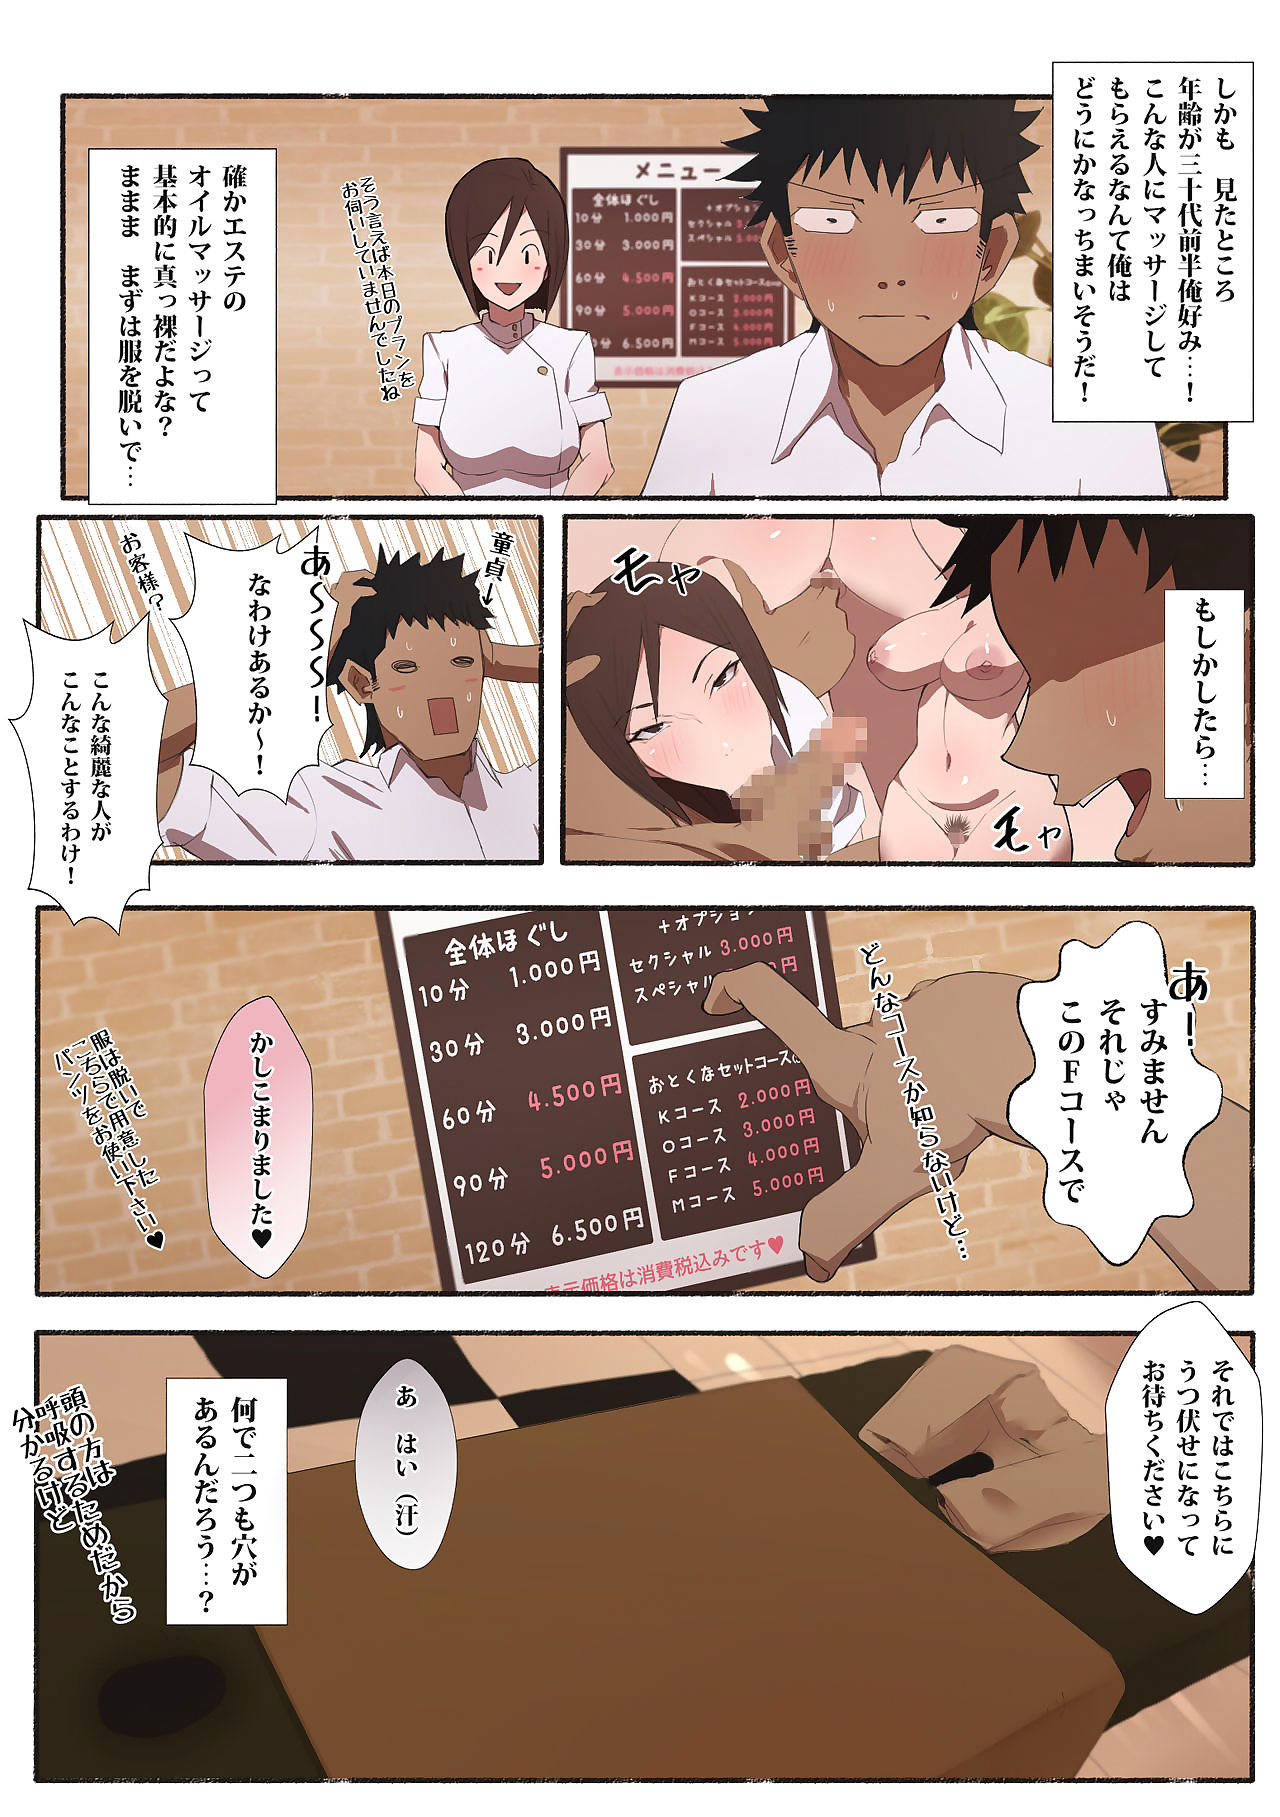 hataraku oneesan - Erotyczne Salon page 1